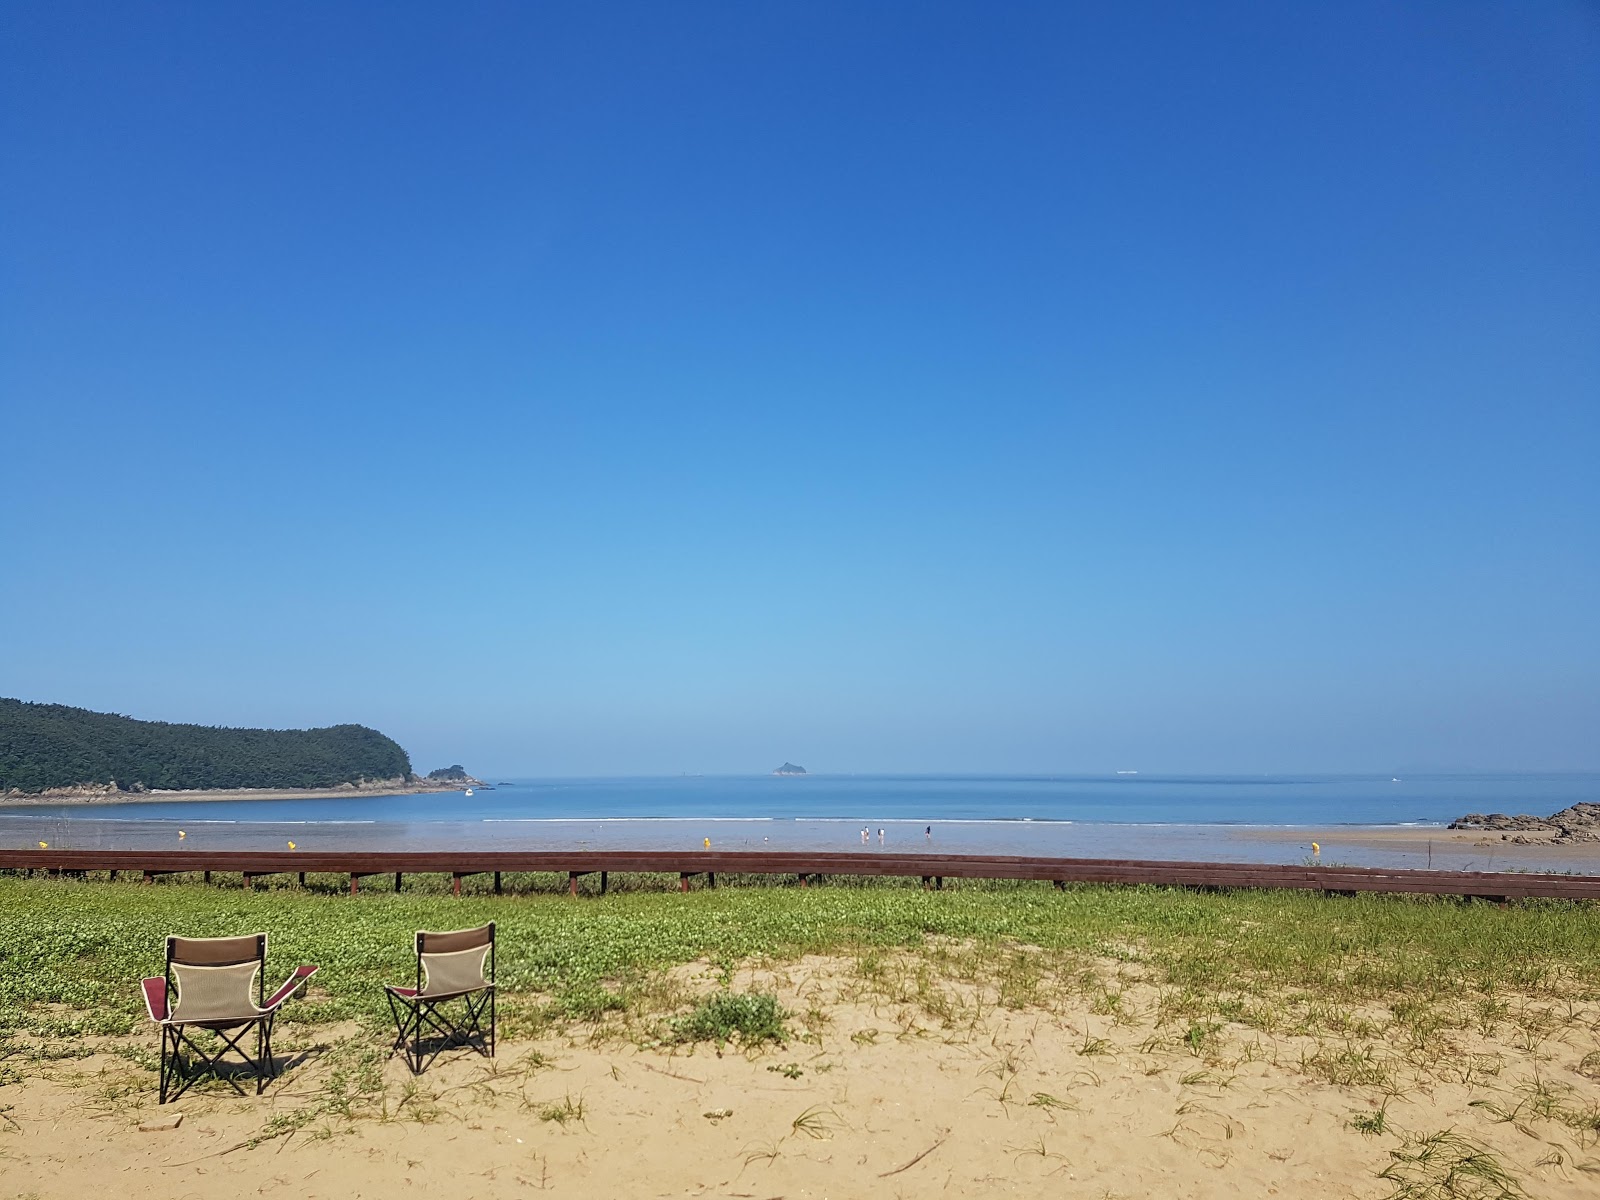 Foto af Guryepo Beach - populært sted blandt afslapningskendere